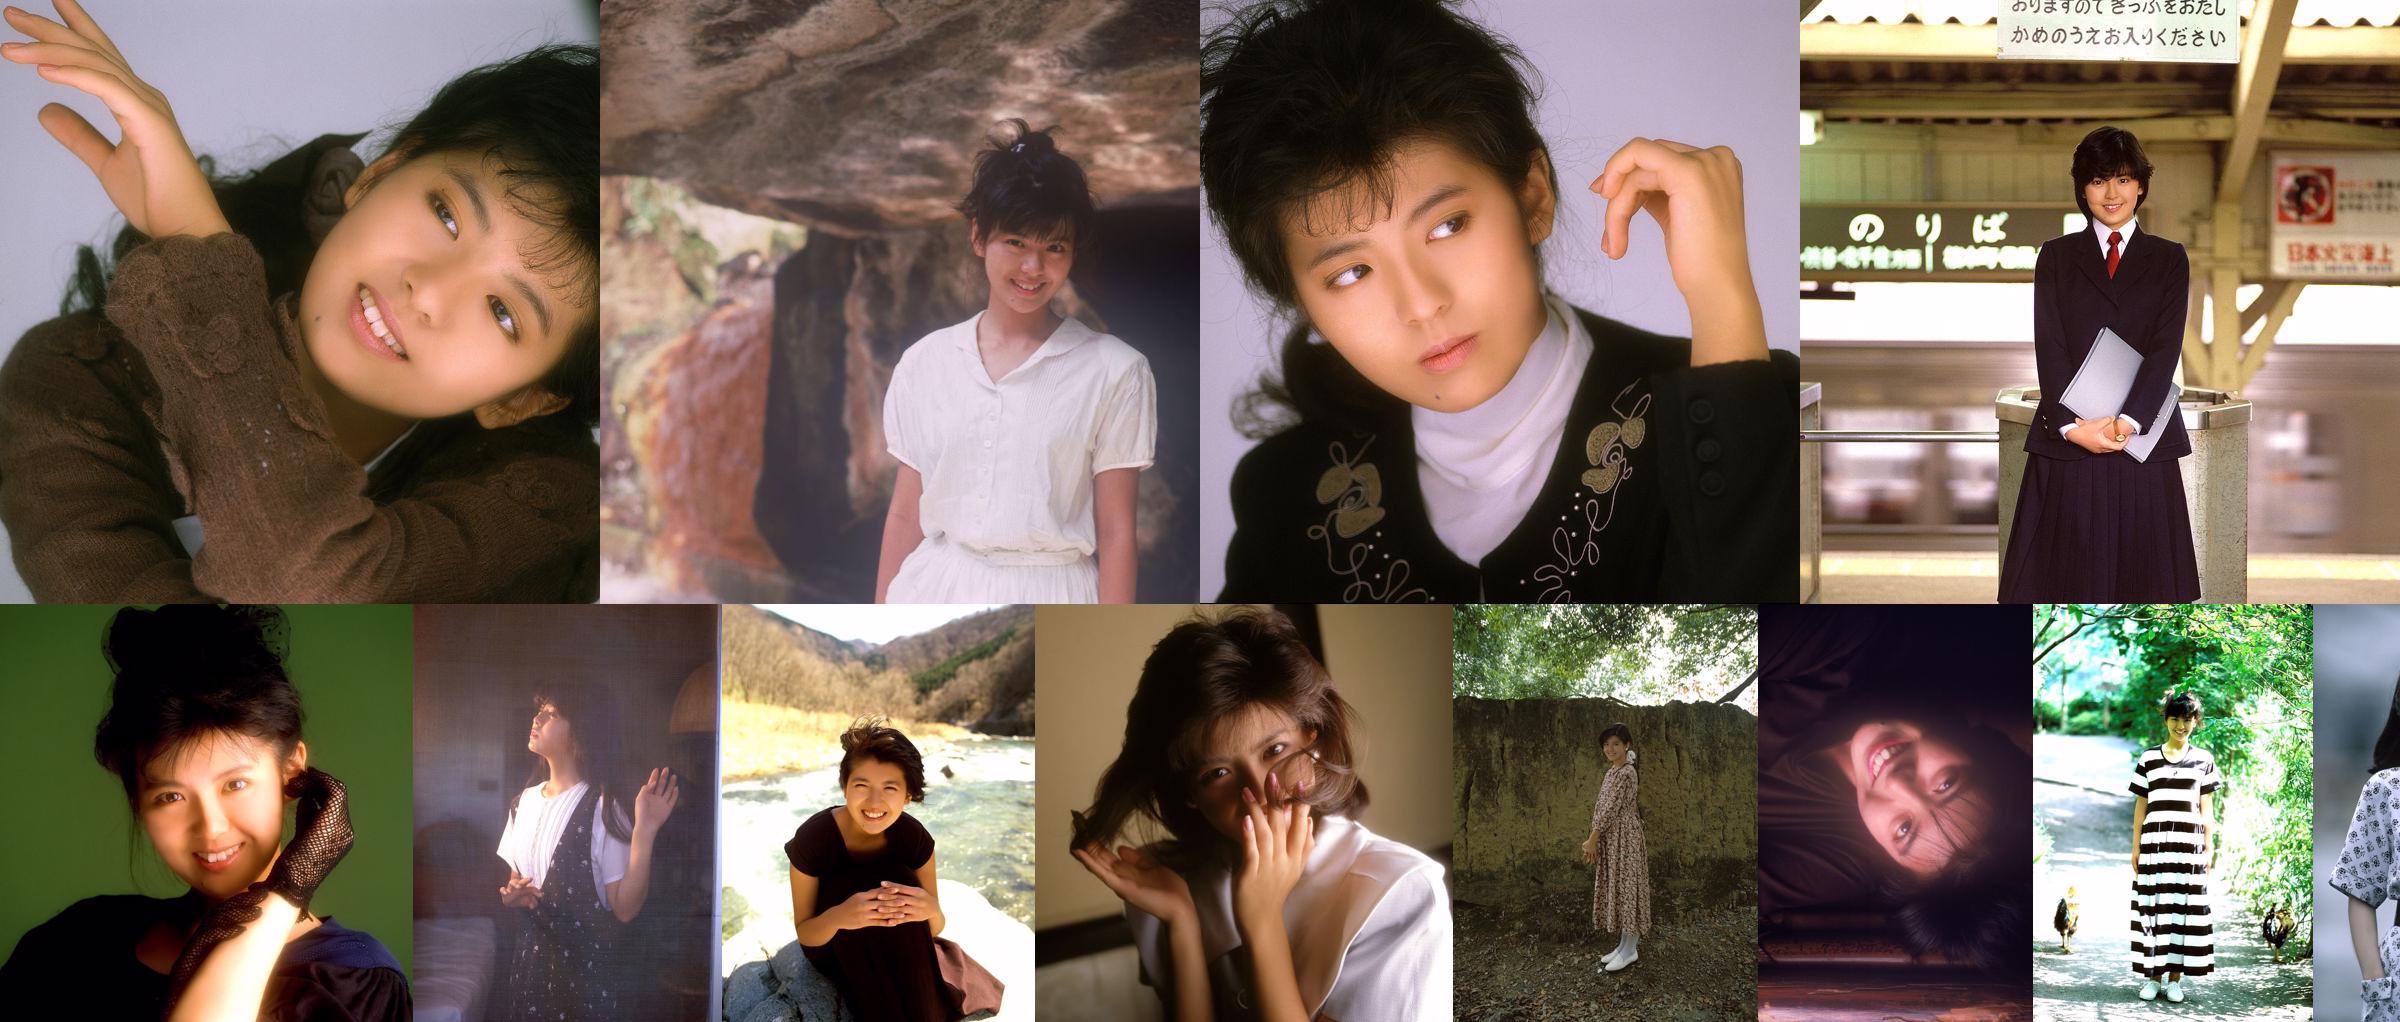 [NS Eyes] SF-No.635 Minamino Yoko Yoko Minamino No.199647 Halaman 6